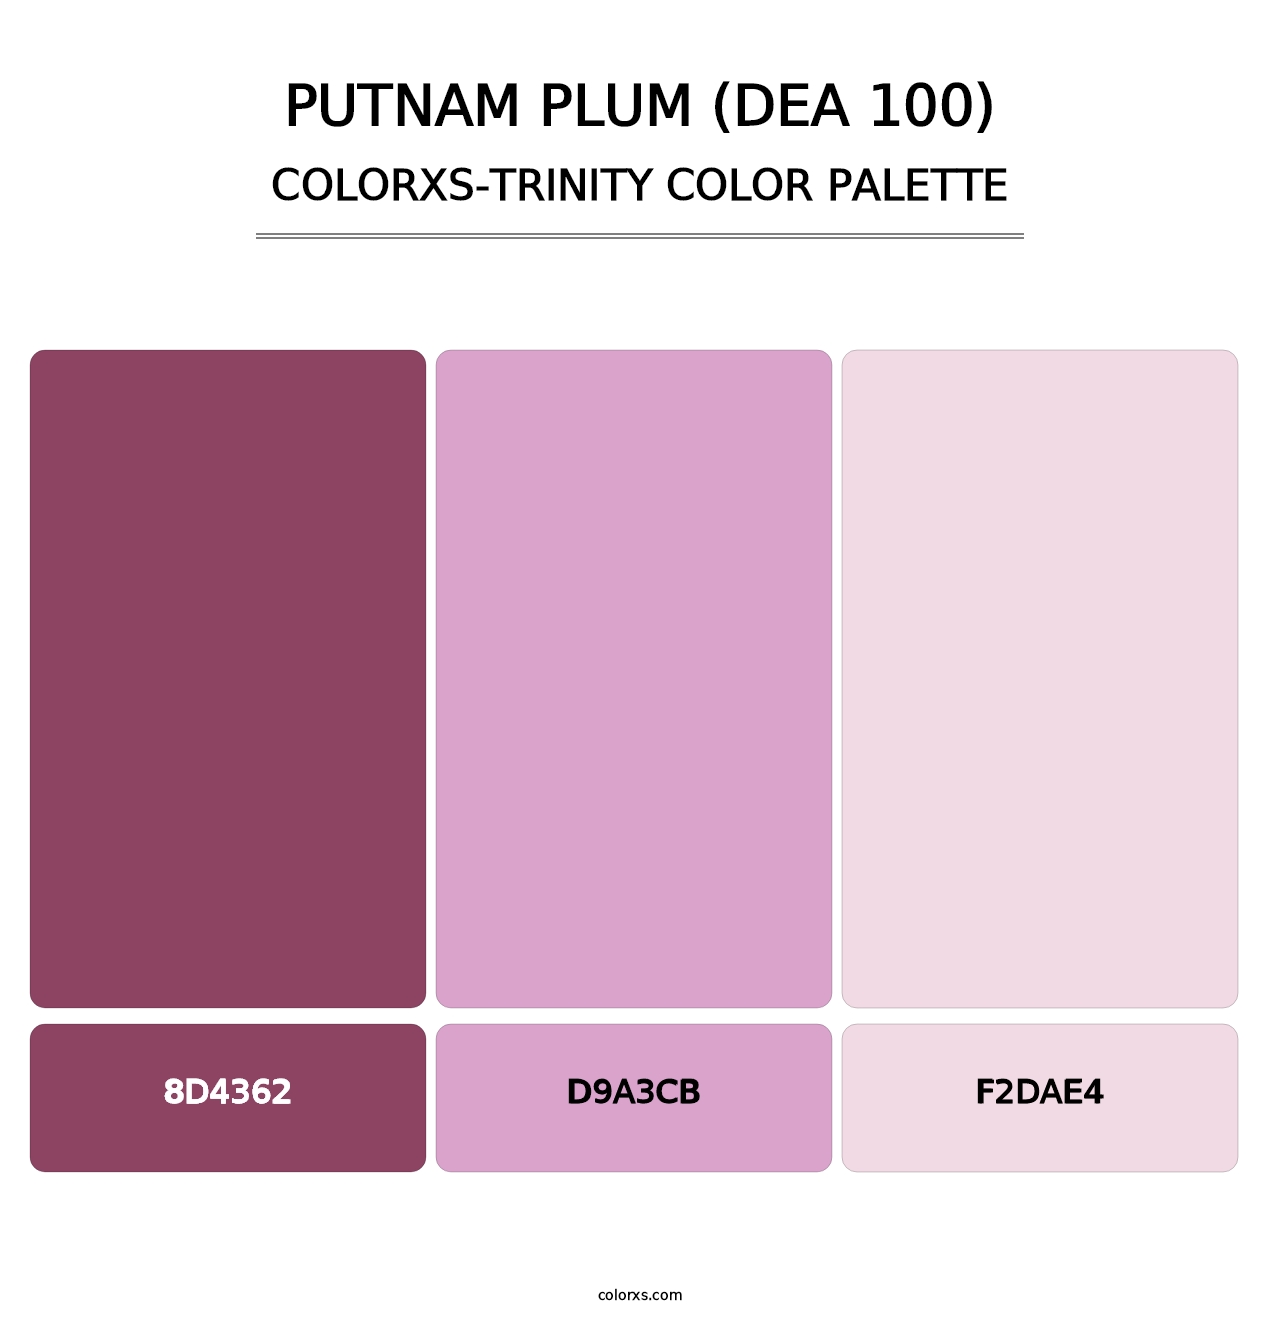 Putnam Plum (DEA 100) - Colorxs Trinity Palette